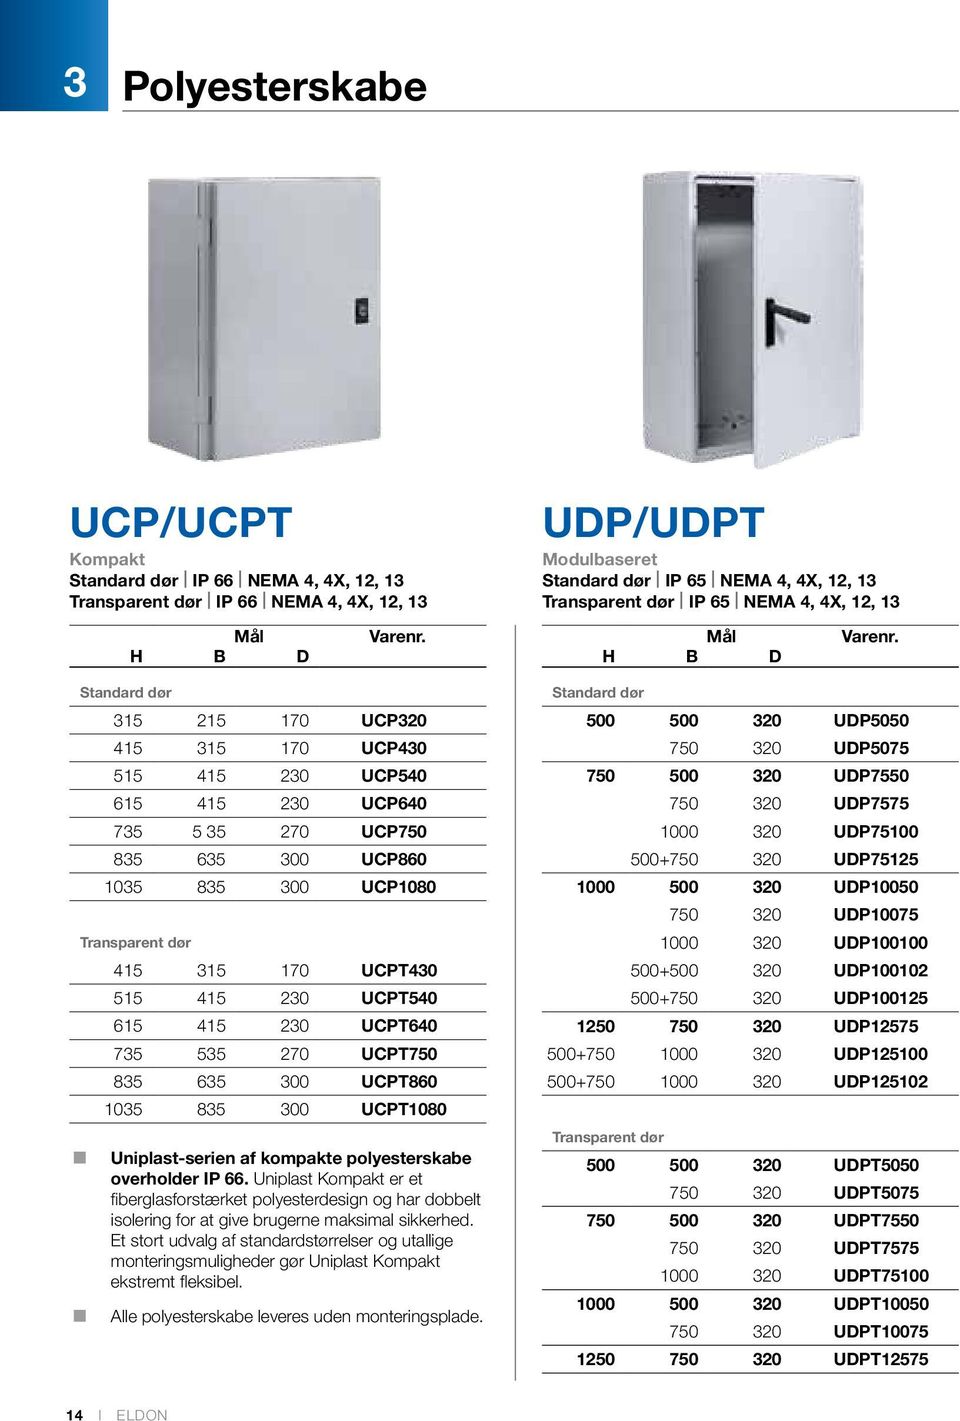 UCPT1080 Uniplast-serien af kompakte polyesterskabe overholder IP 66. Uniplast Kompakt er et fiberglasforstærket polyesterdesign og har dobbelt isolering for at give brugerne maksimal sikkerhed.